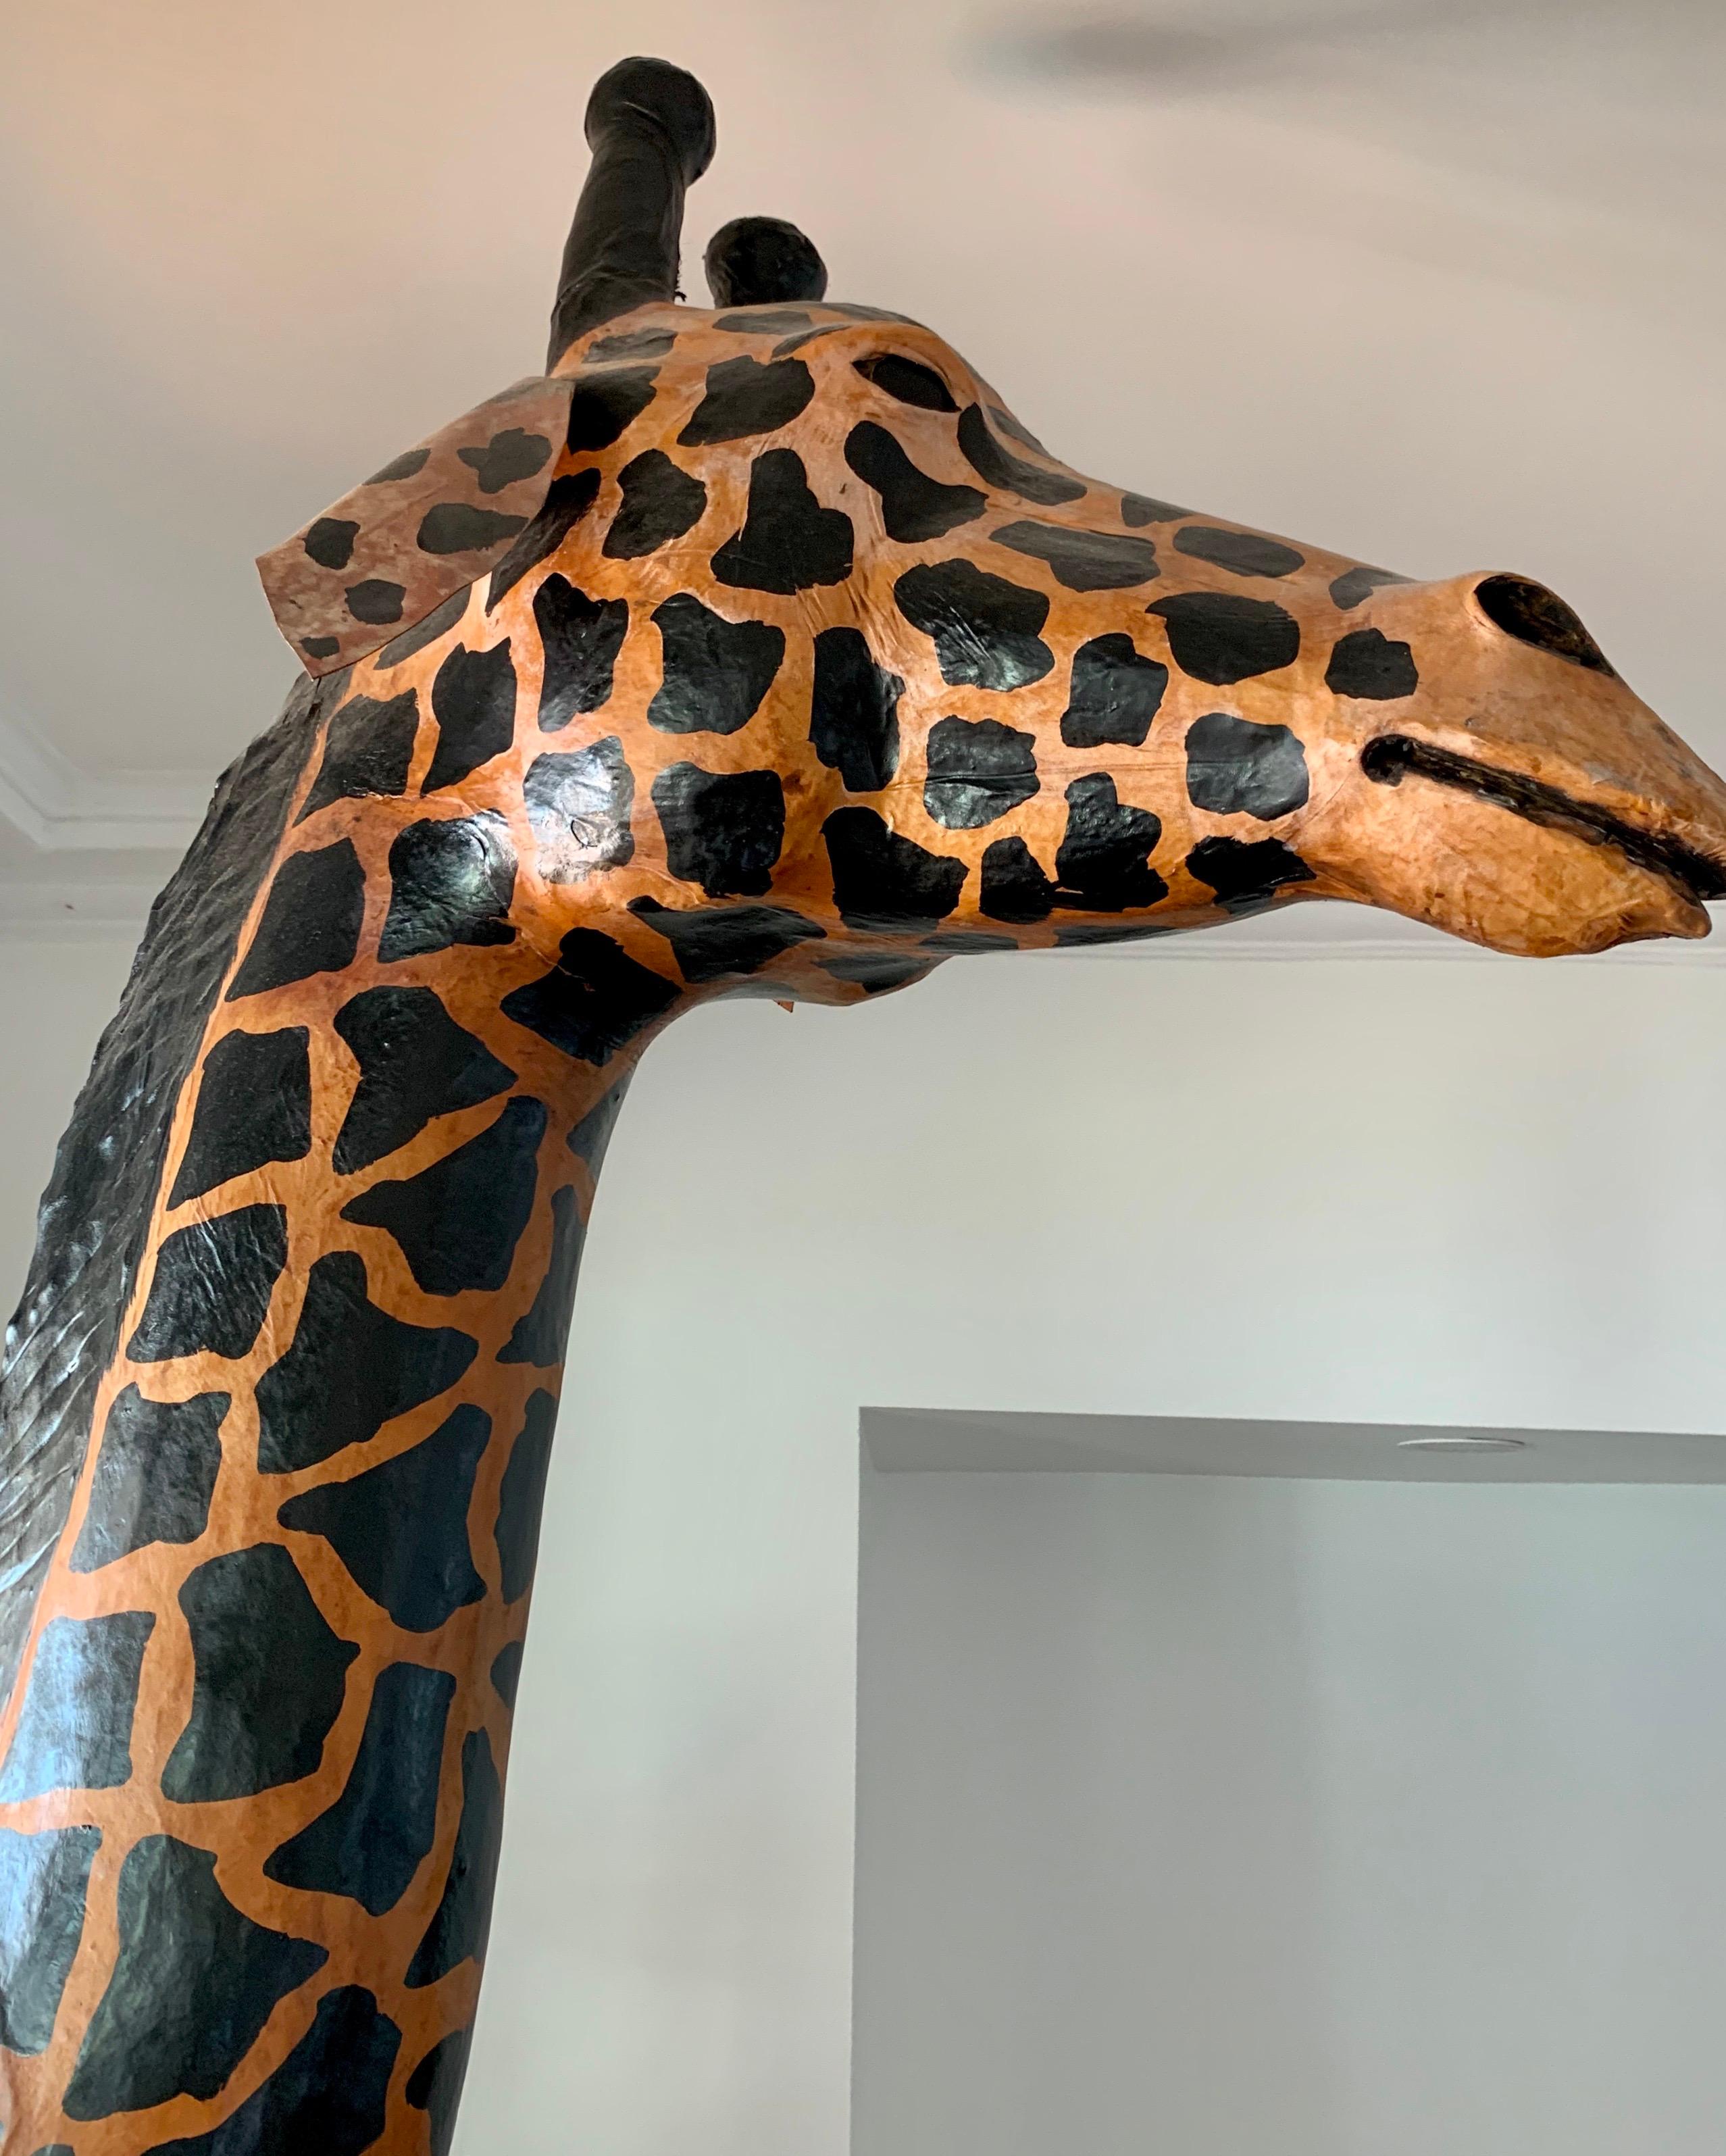 6 foot tall wooden giraffe